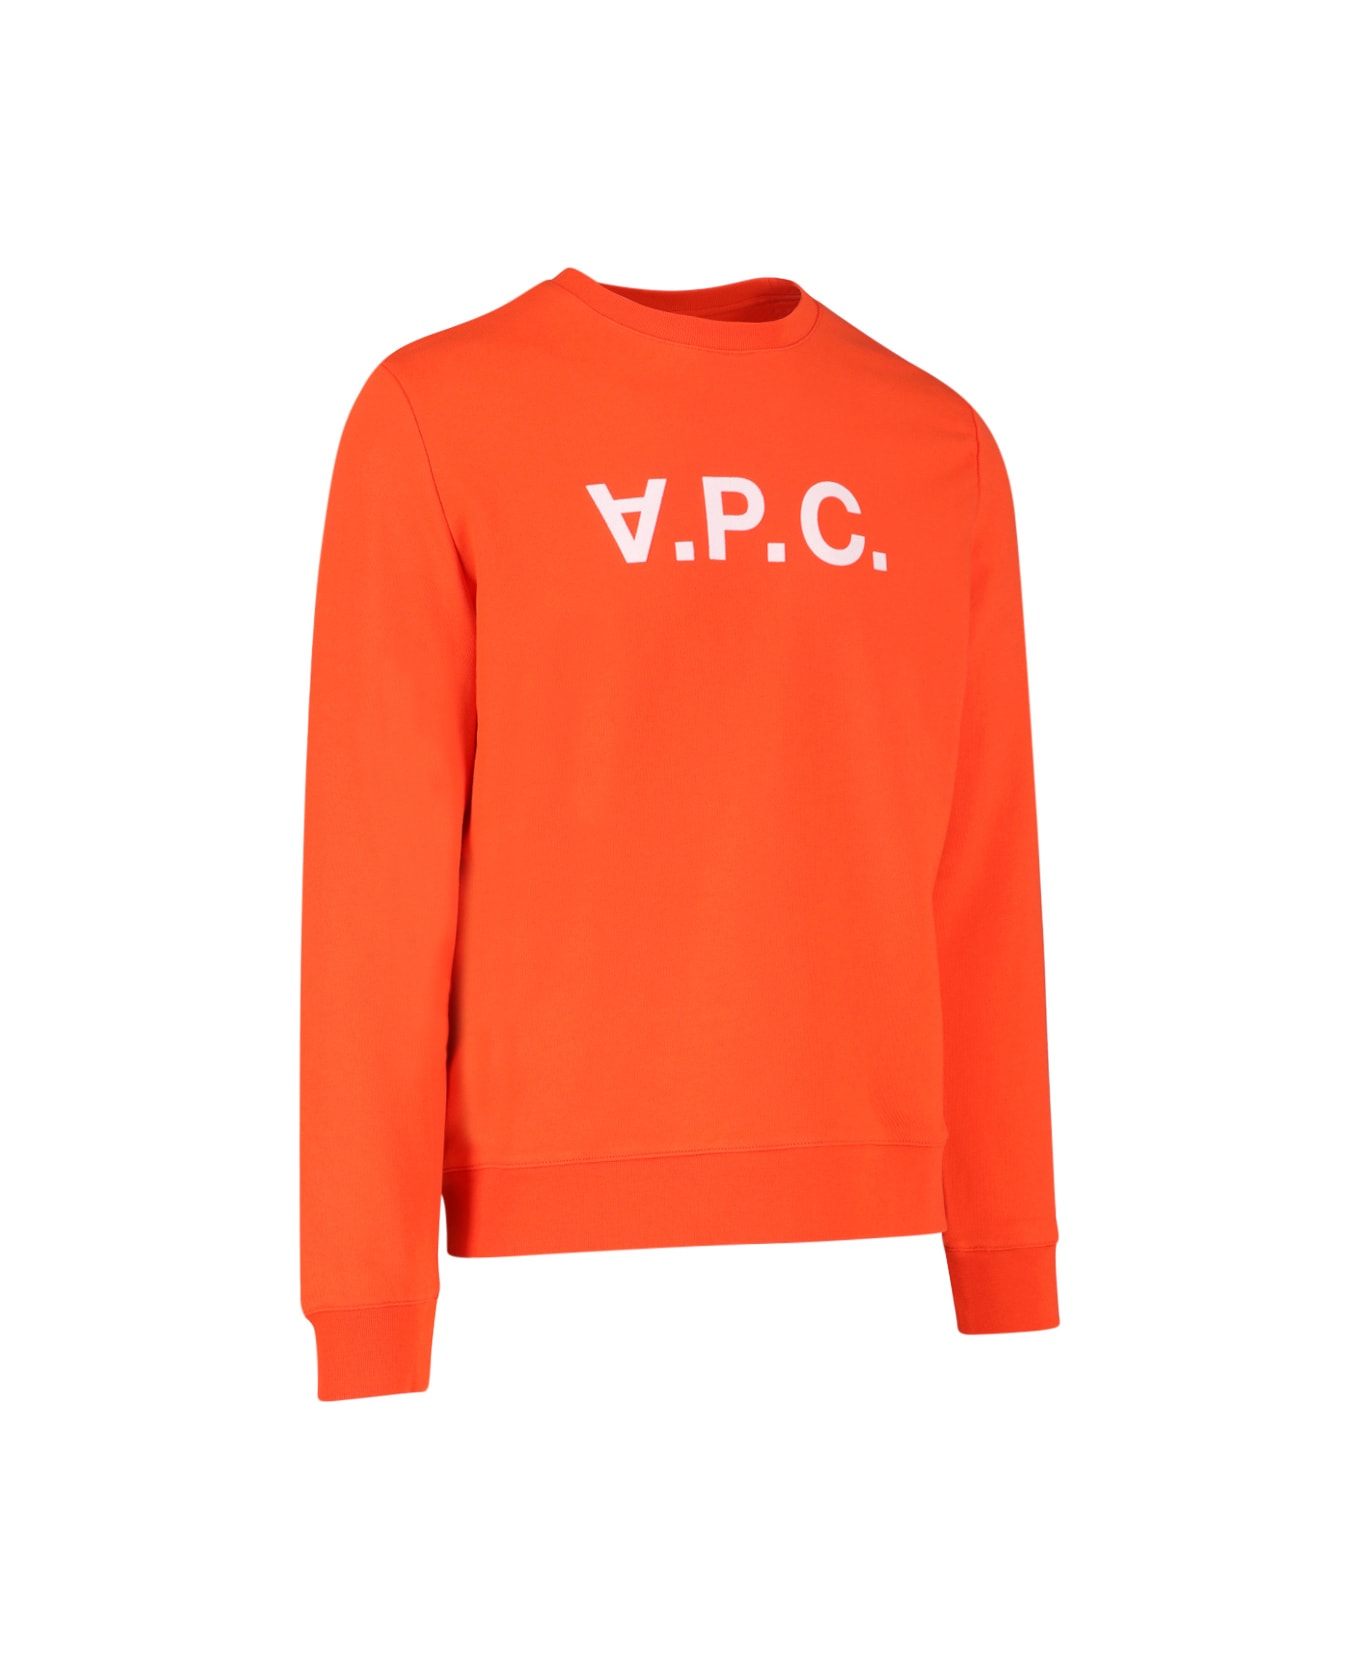 A.P.C. Sweater - Arancione